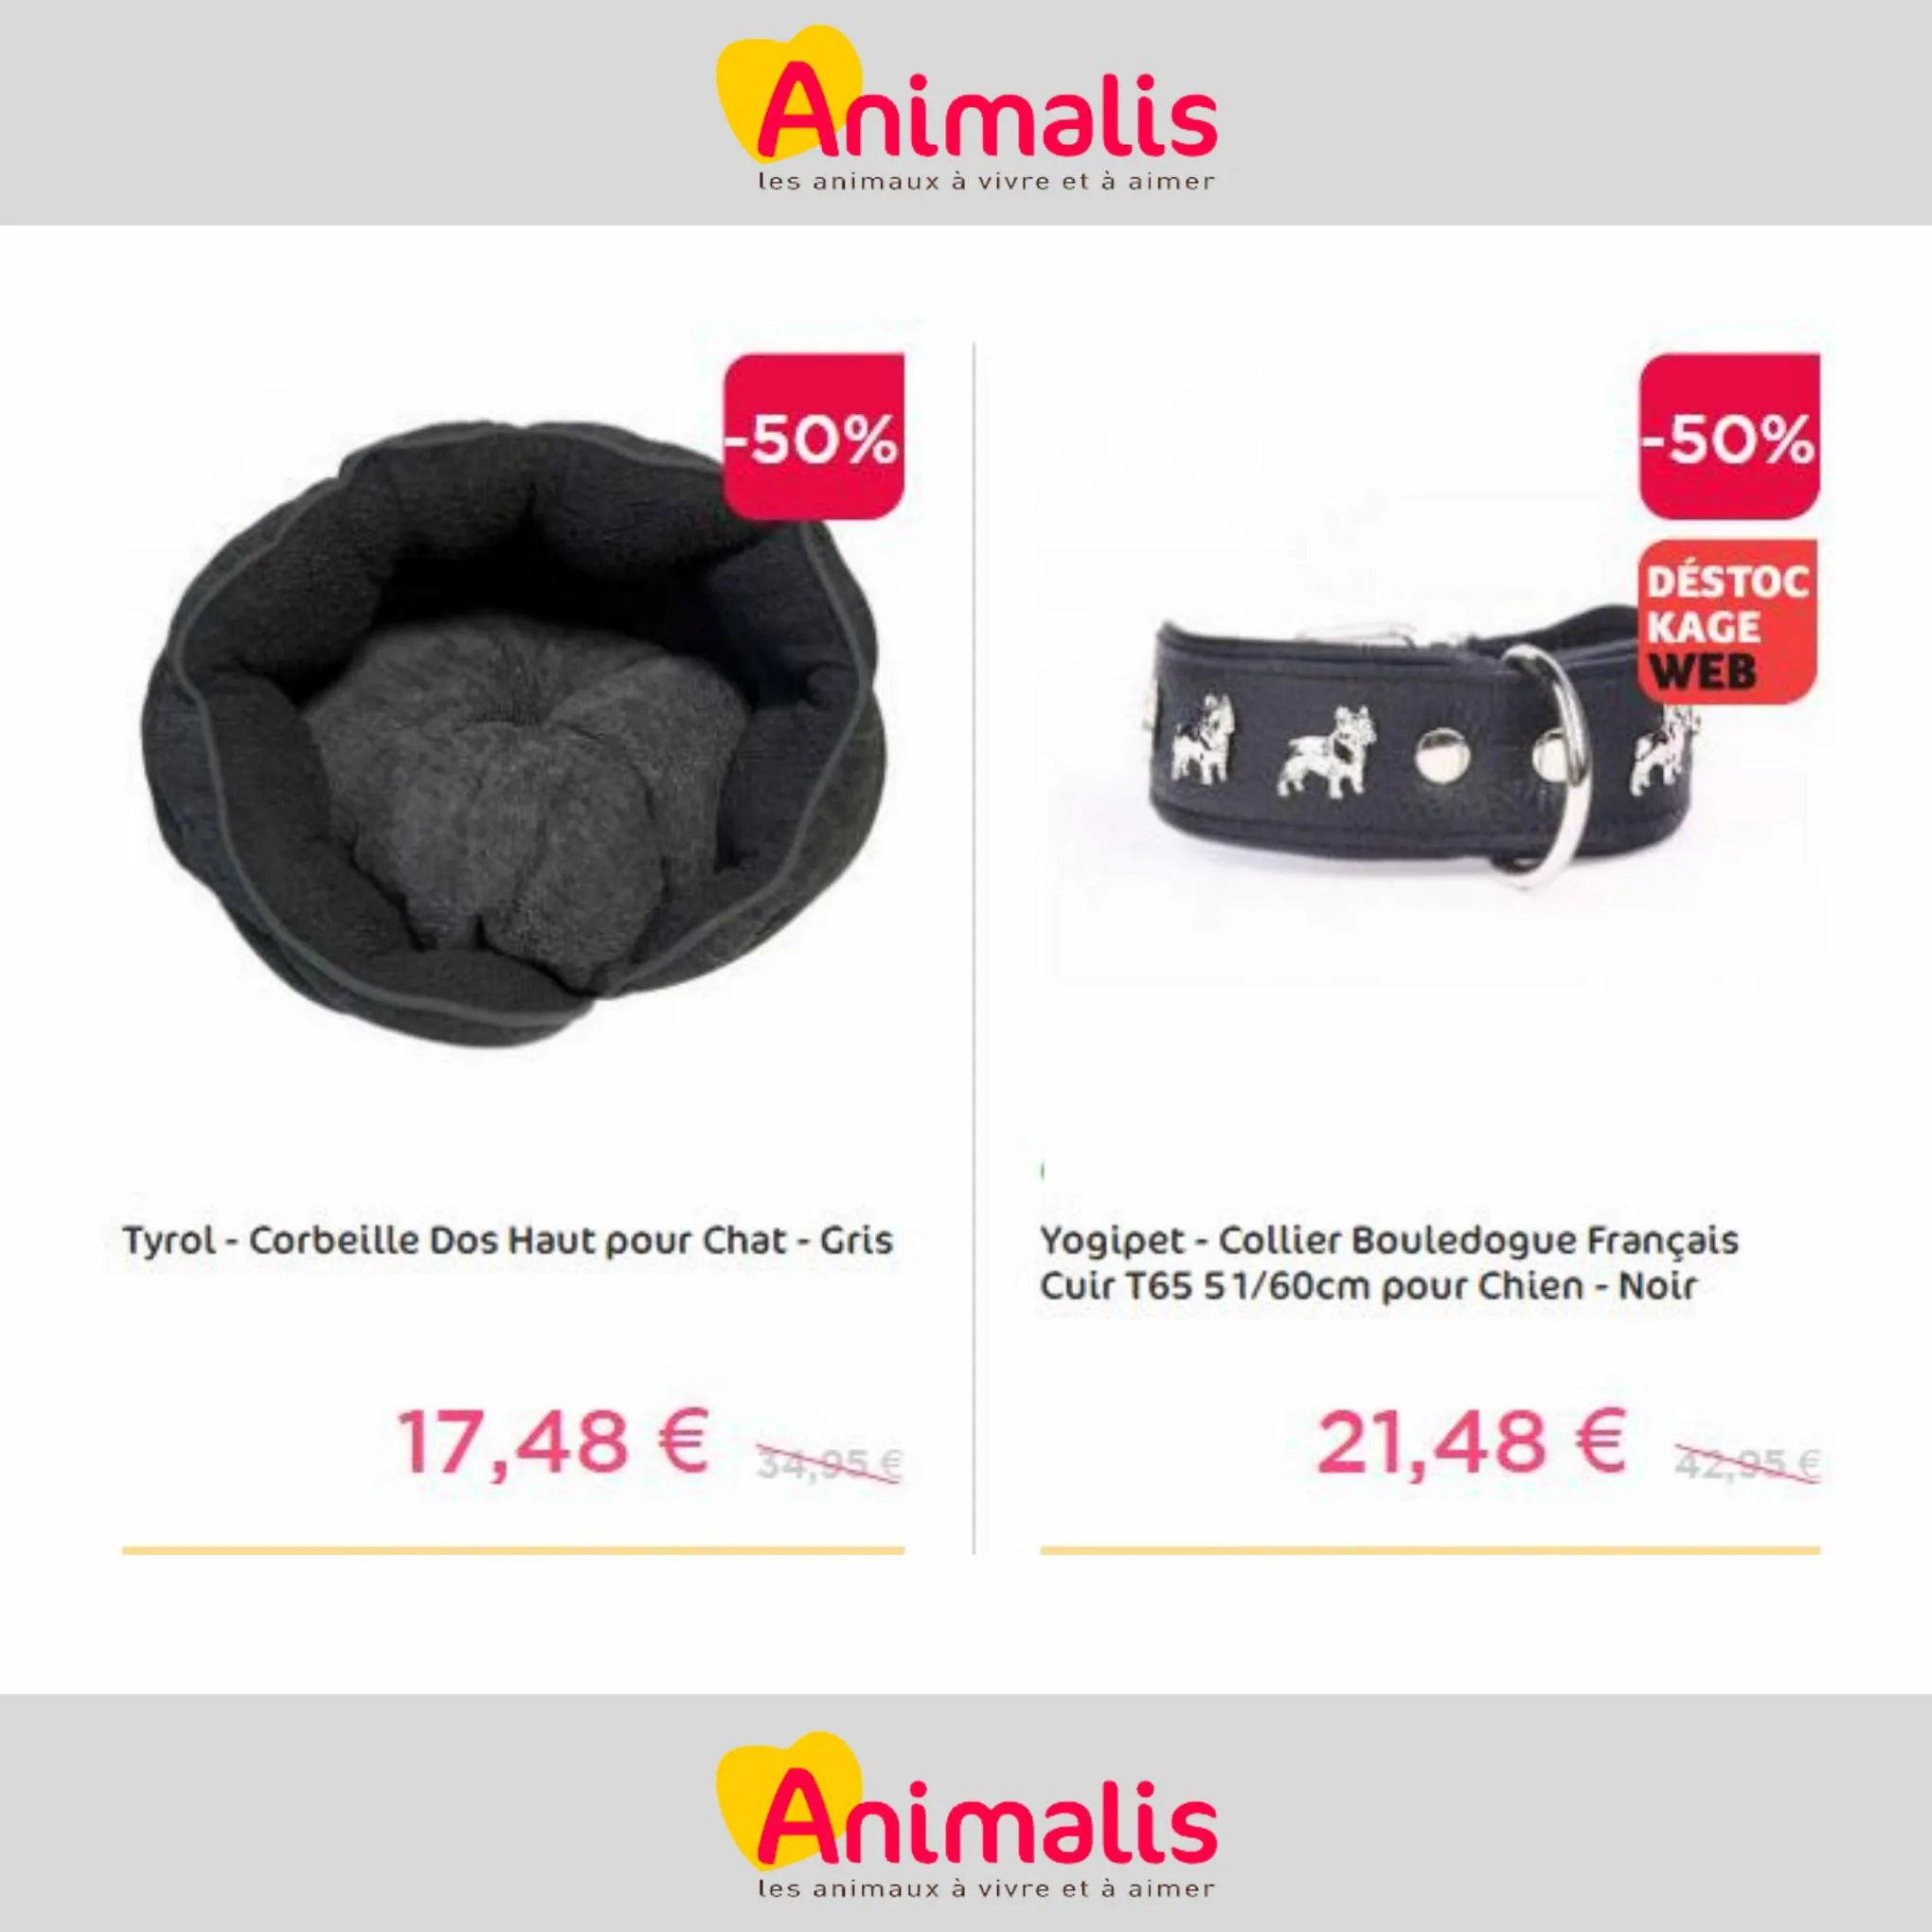 Catalogue Super offres de -50% pour votre animal de compagnie, page 00007